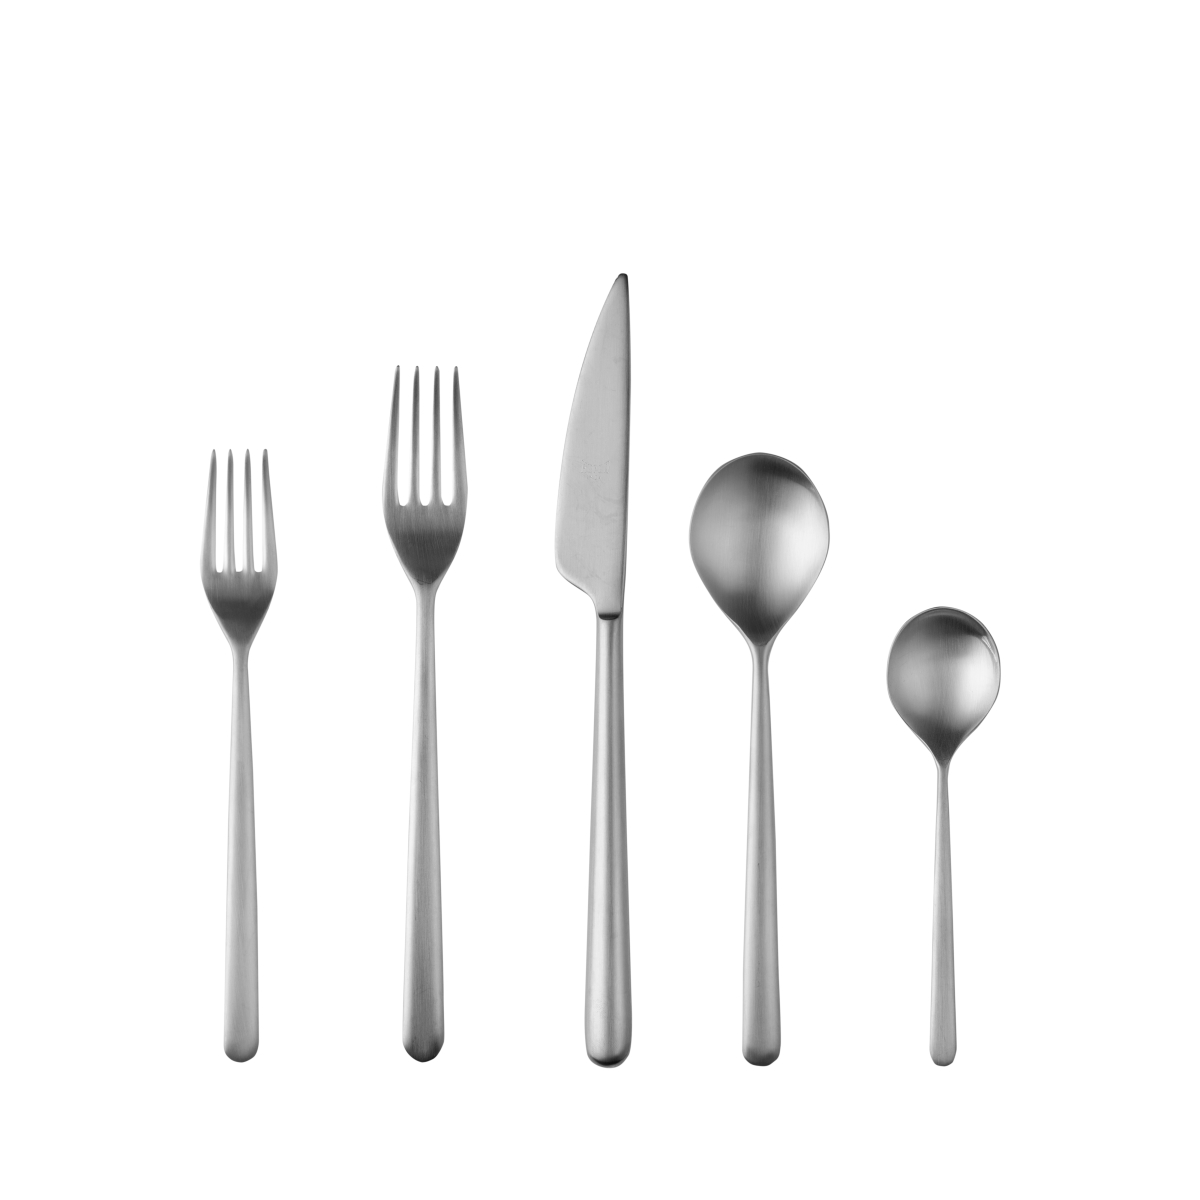 104722005 Linea Ice Cutlery Set - 5 Piece